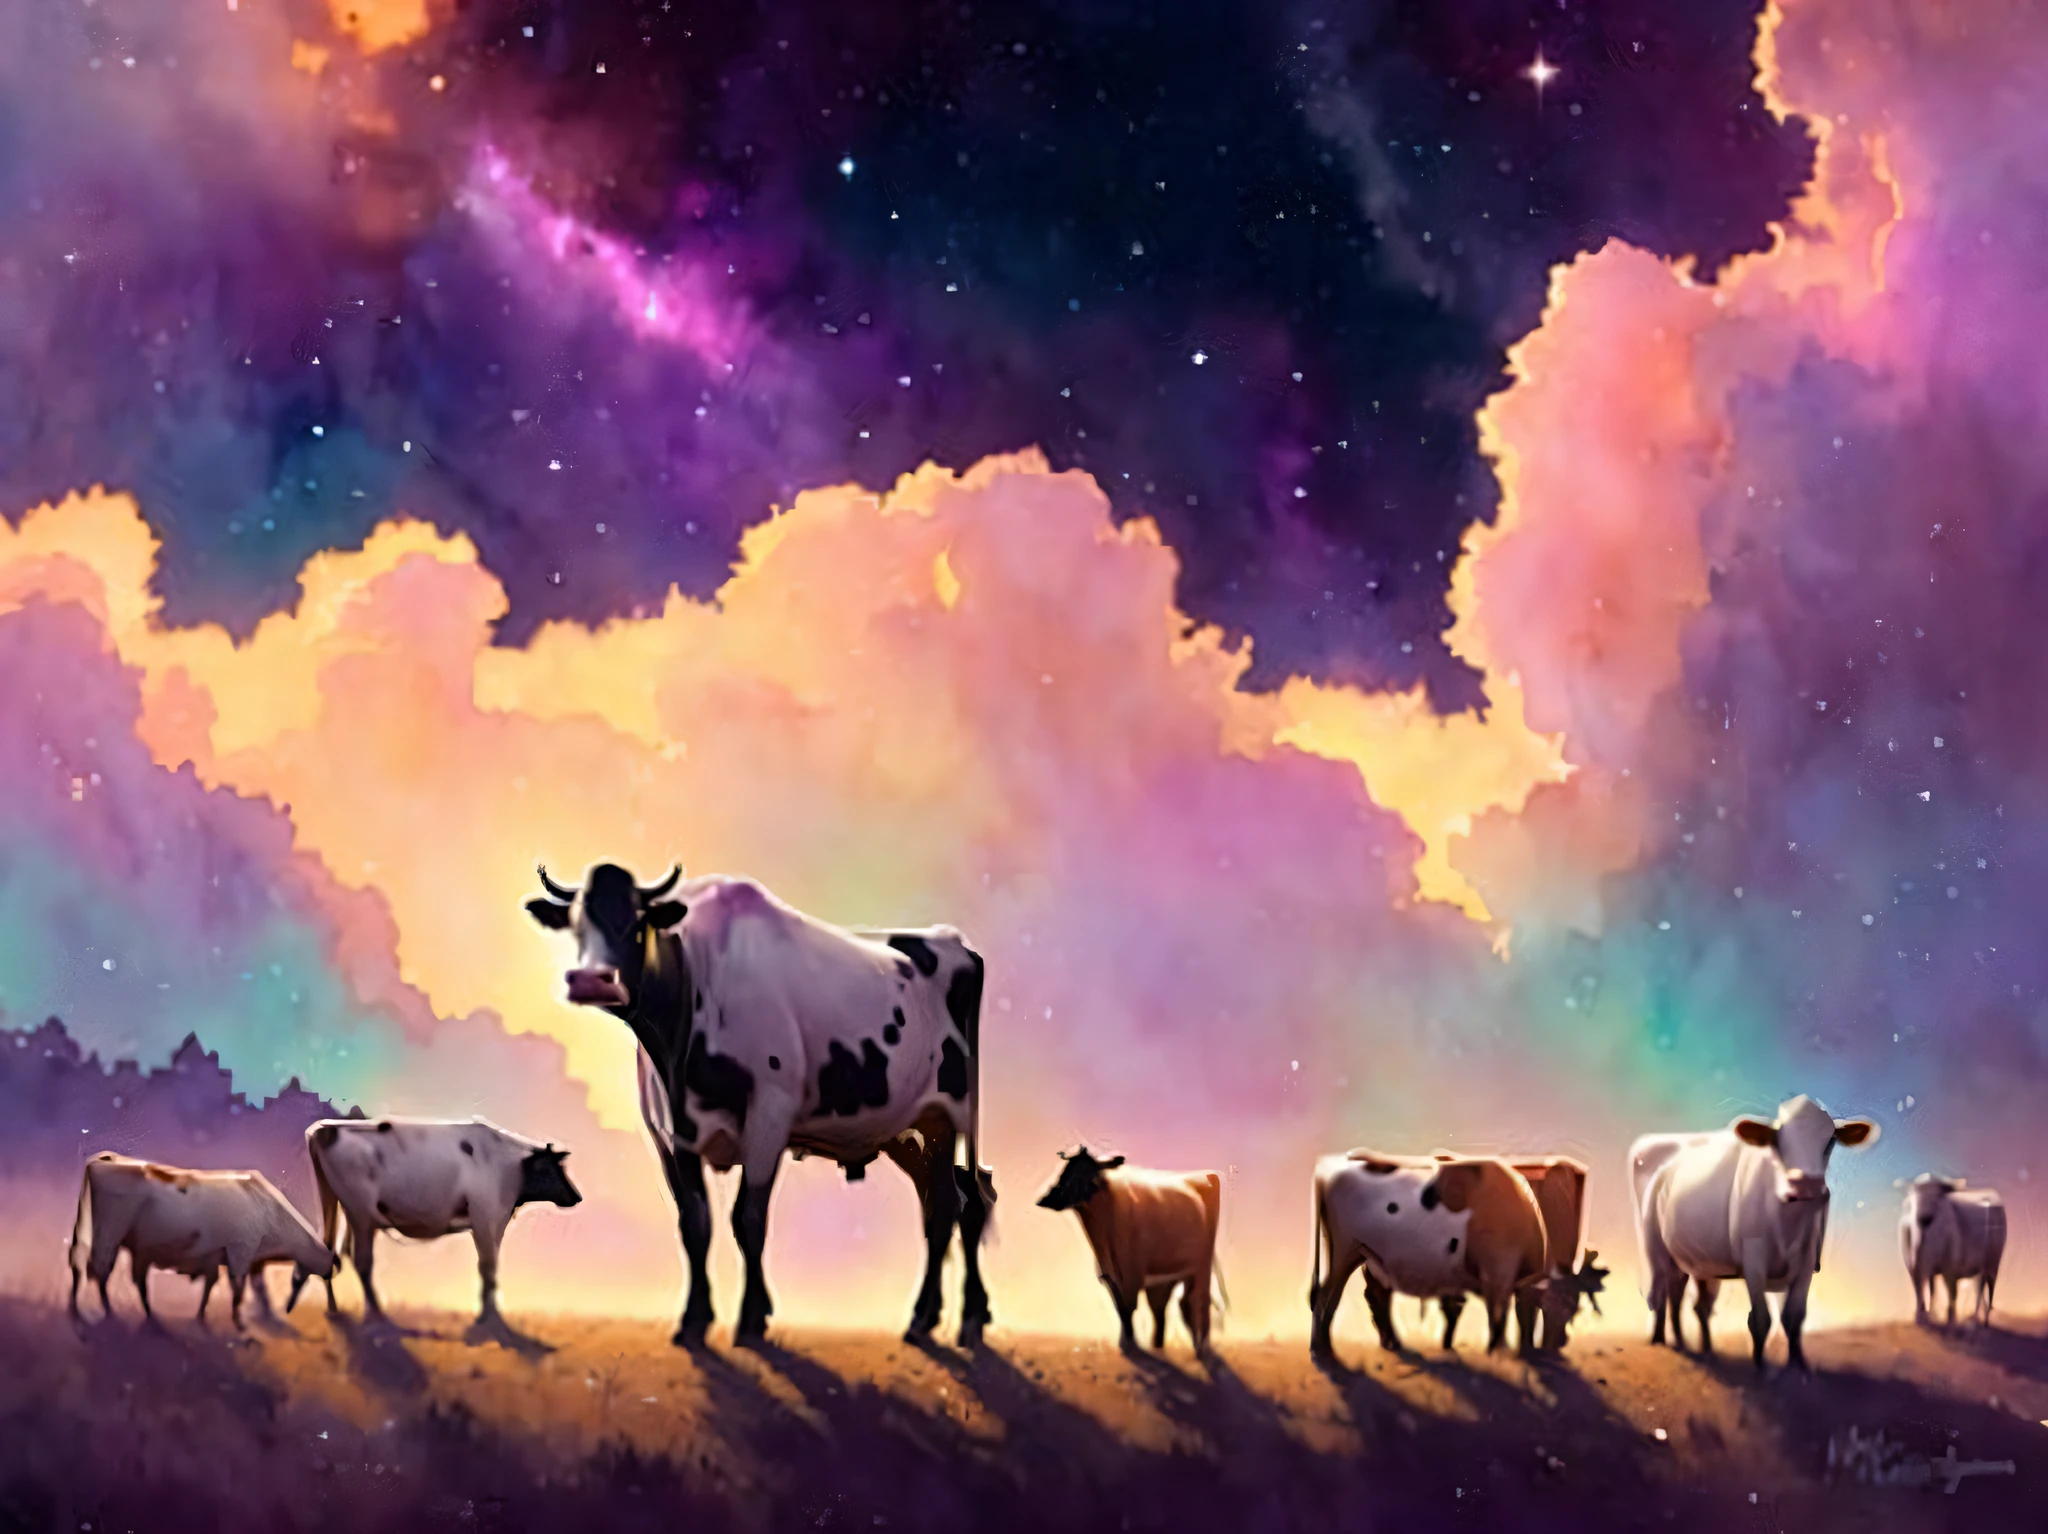 奶牛，它们被星云包围, 非常详细, 金银花丝, 浪漫故事书幻想, 柔和的电影灯光, 奖, 迪士尼概念艺术水彩画，由 mandy jurgens、alphonse mucha 和 alena aenami 创作, 柔和的调色板, 在 Artstation 上精选